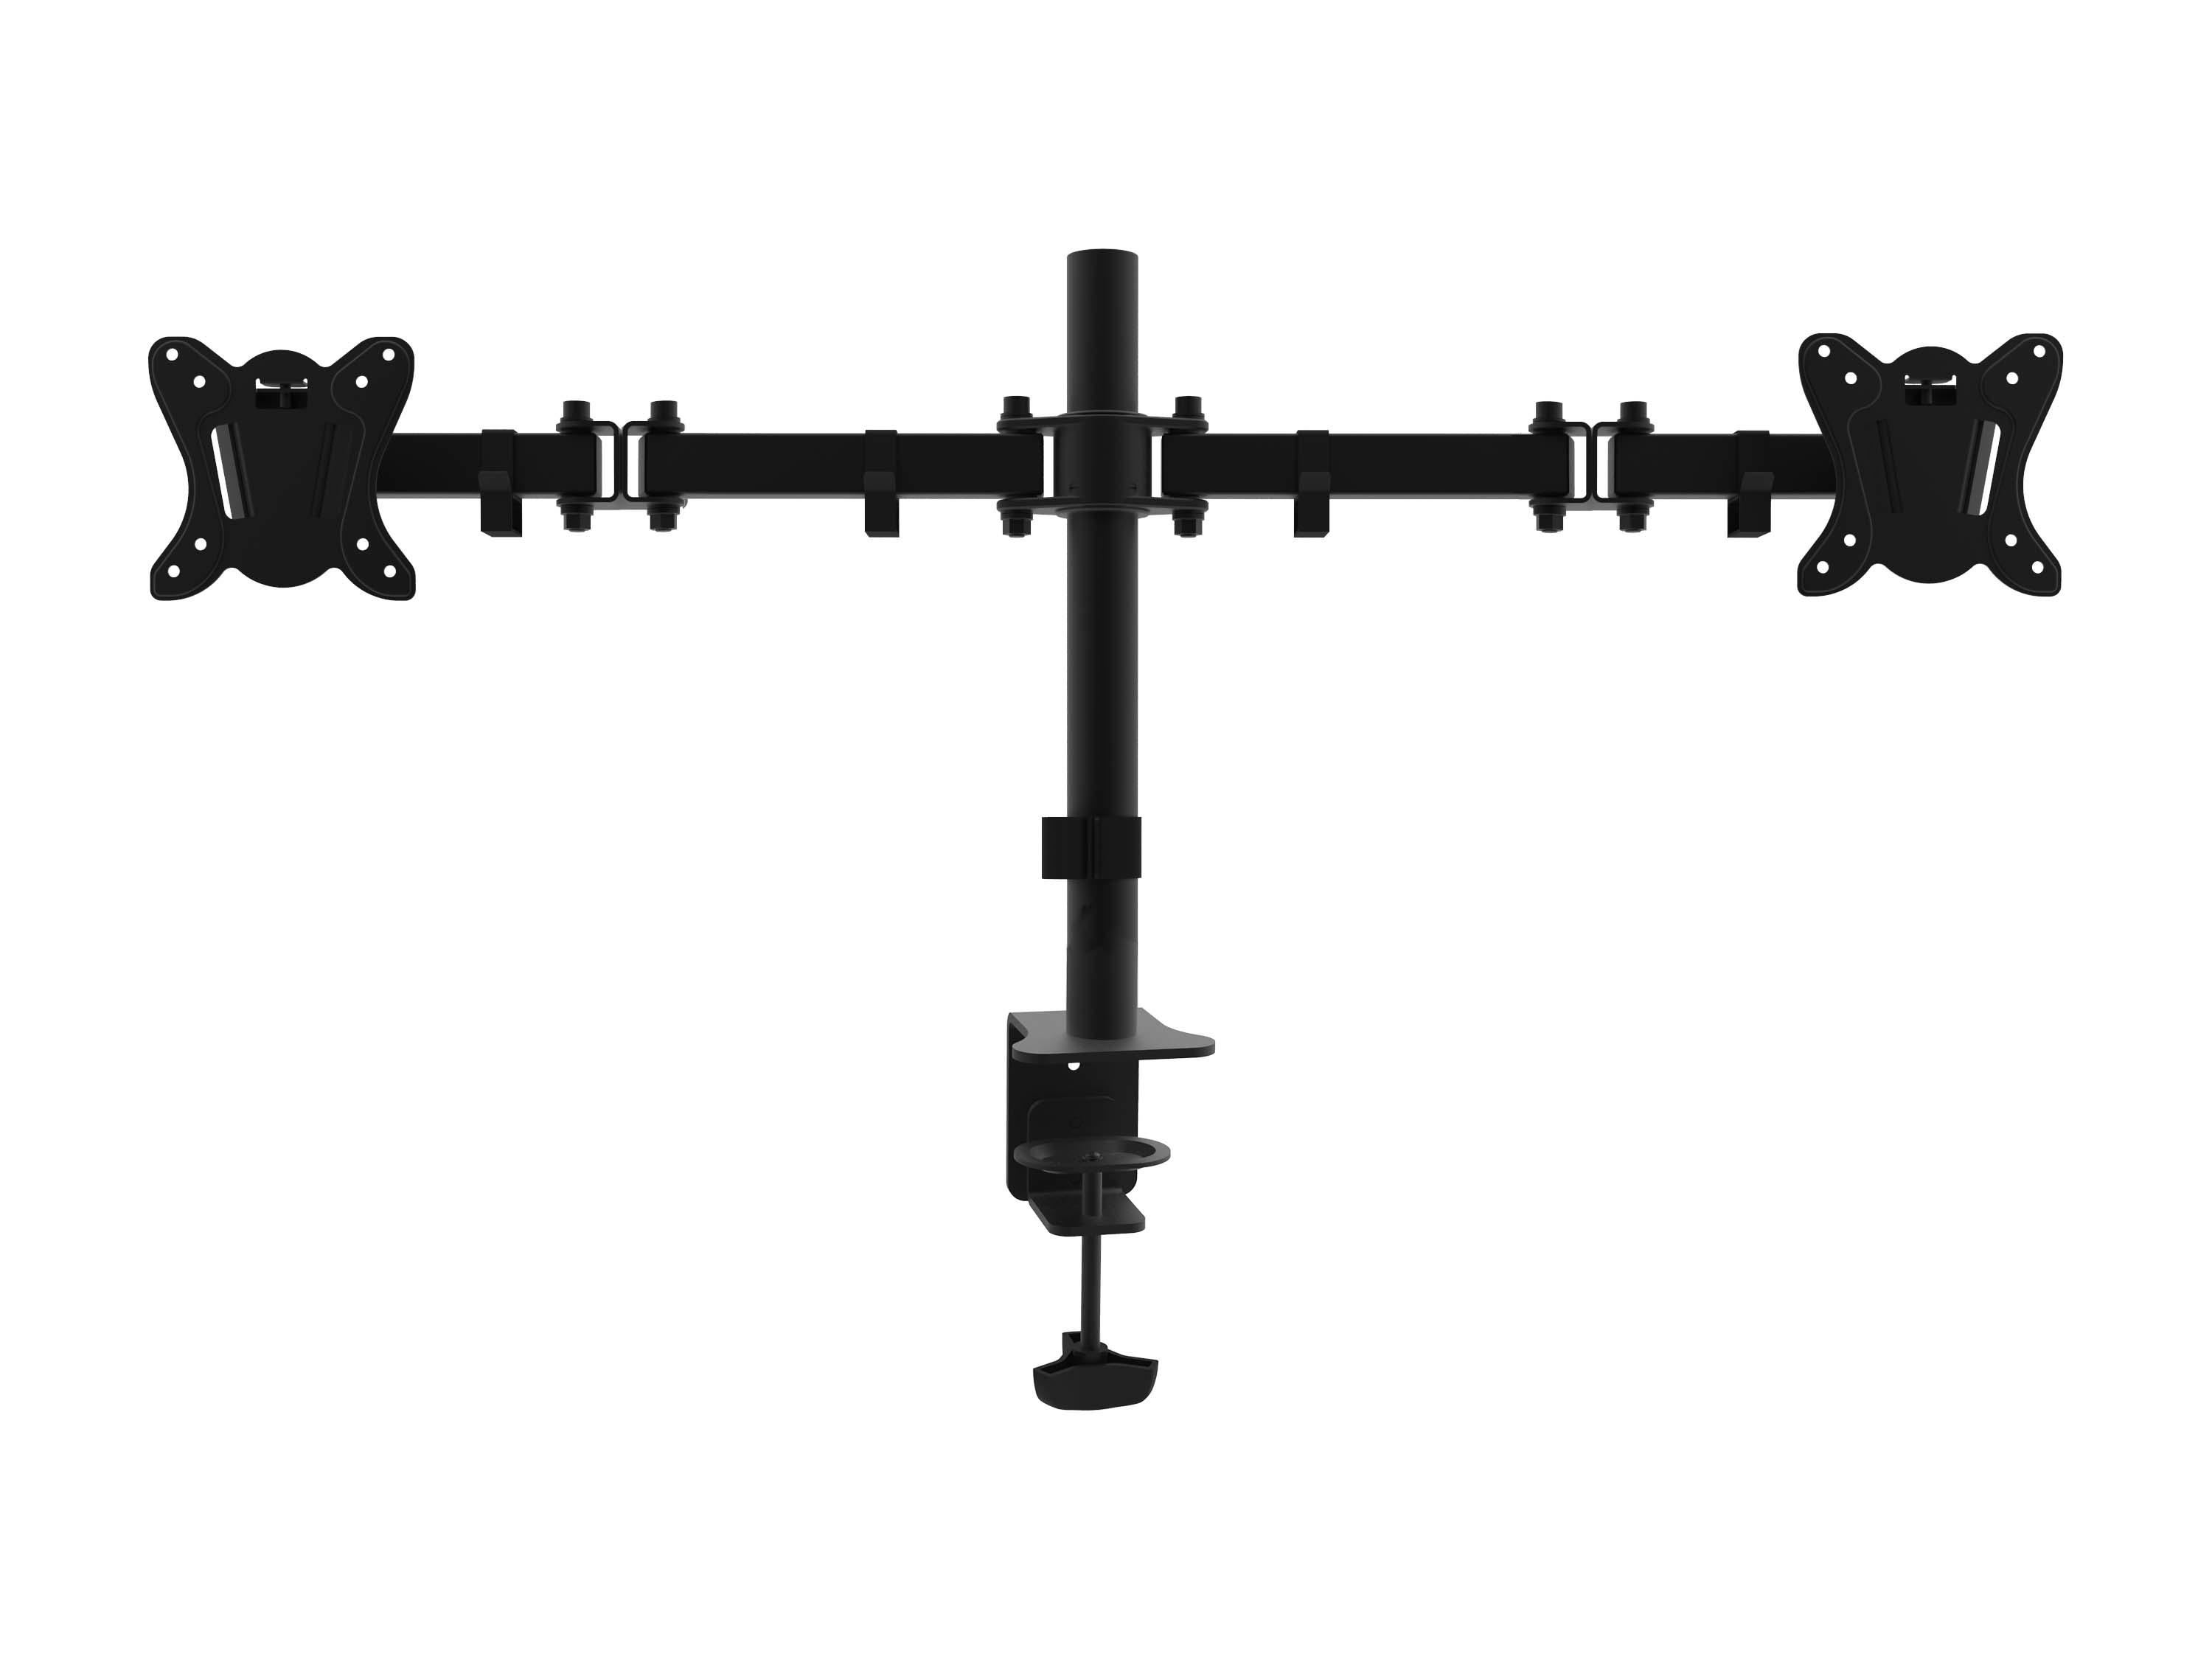 Equip Pro Articulating Dual Monitor Desk Mount Bracket - Befestigungskit - full-motion - für 2 LCD-Displays - Kunststoff, Aluminium, Stahl - Schwarz - Bildschirmgröße: 33-68.6 cm (13"-27")